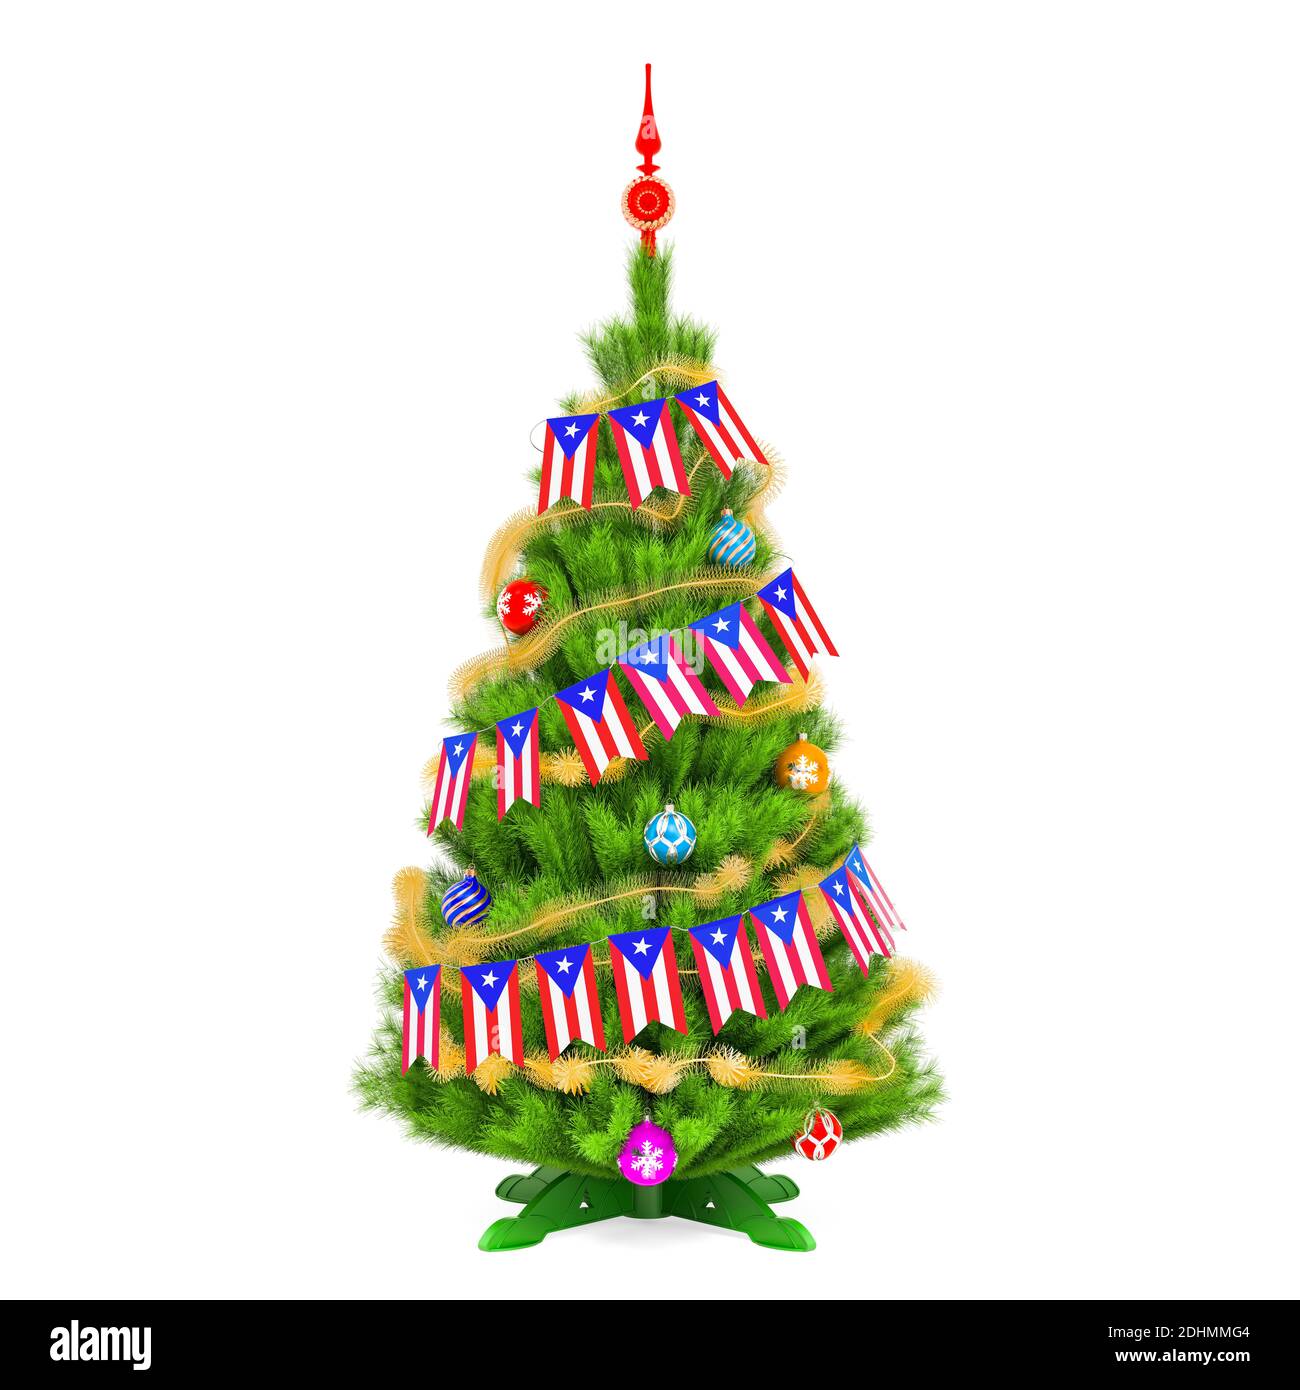 Weihnachtsbaum mit Puerto Rican Xmas Wimpelfahnen, 3D-Rendering isoliert auf weißem Hintergrund Stockfoto